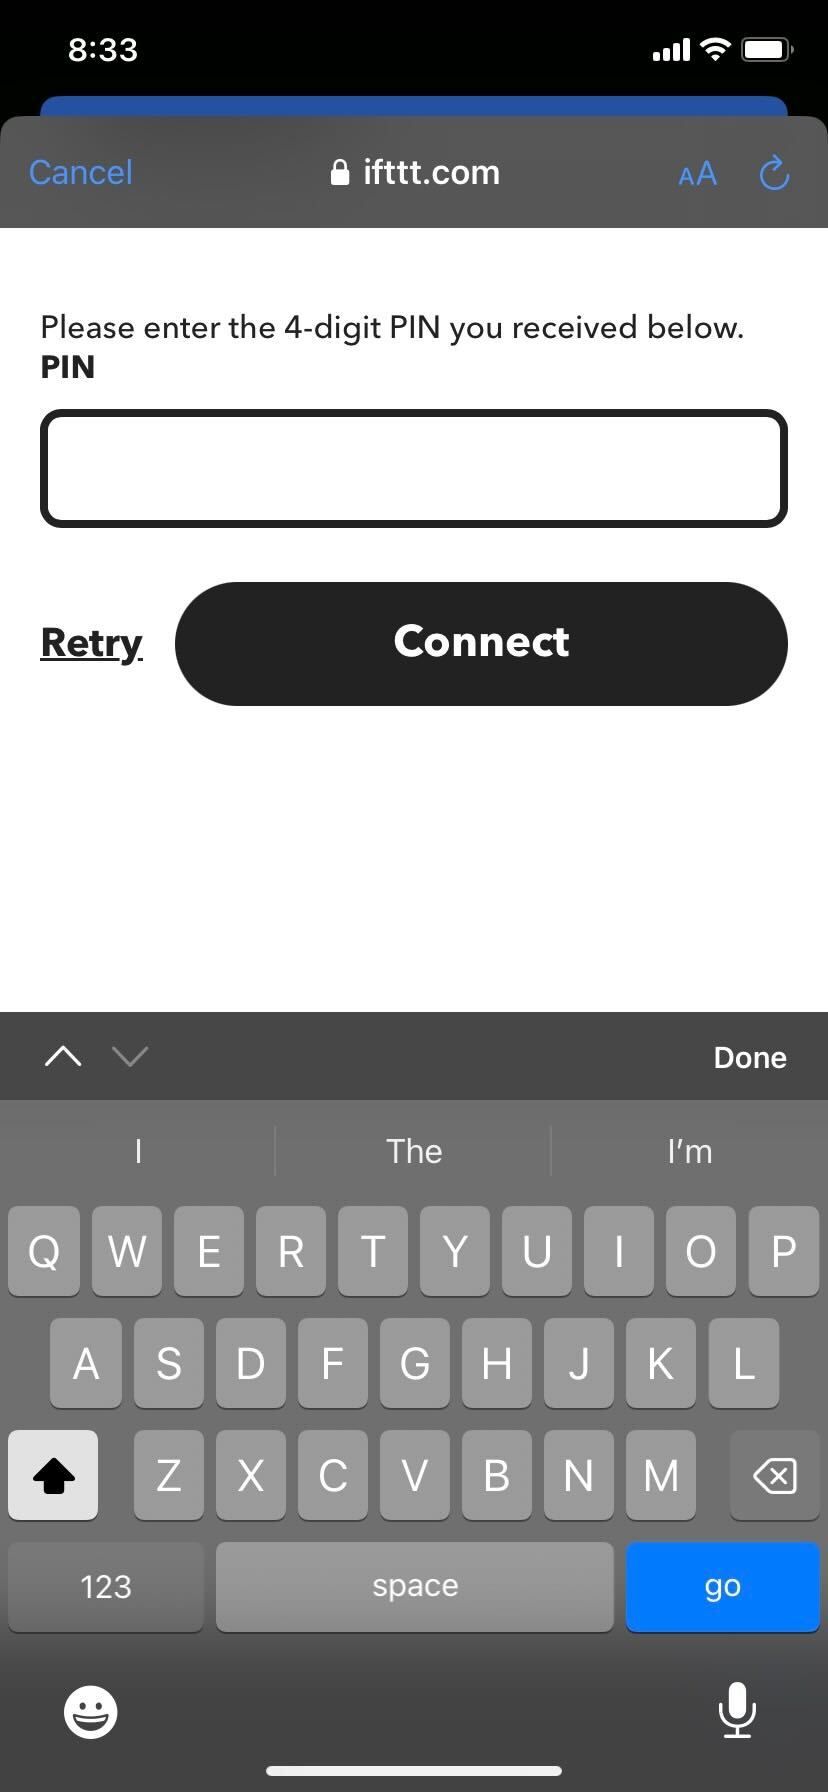 IFTTT app Connect button